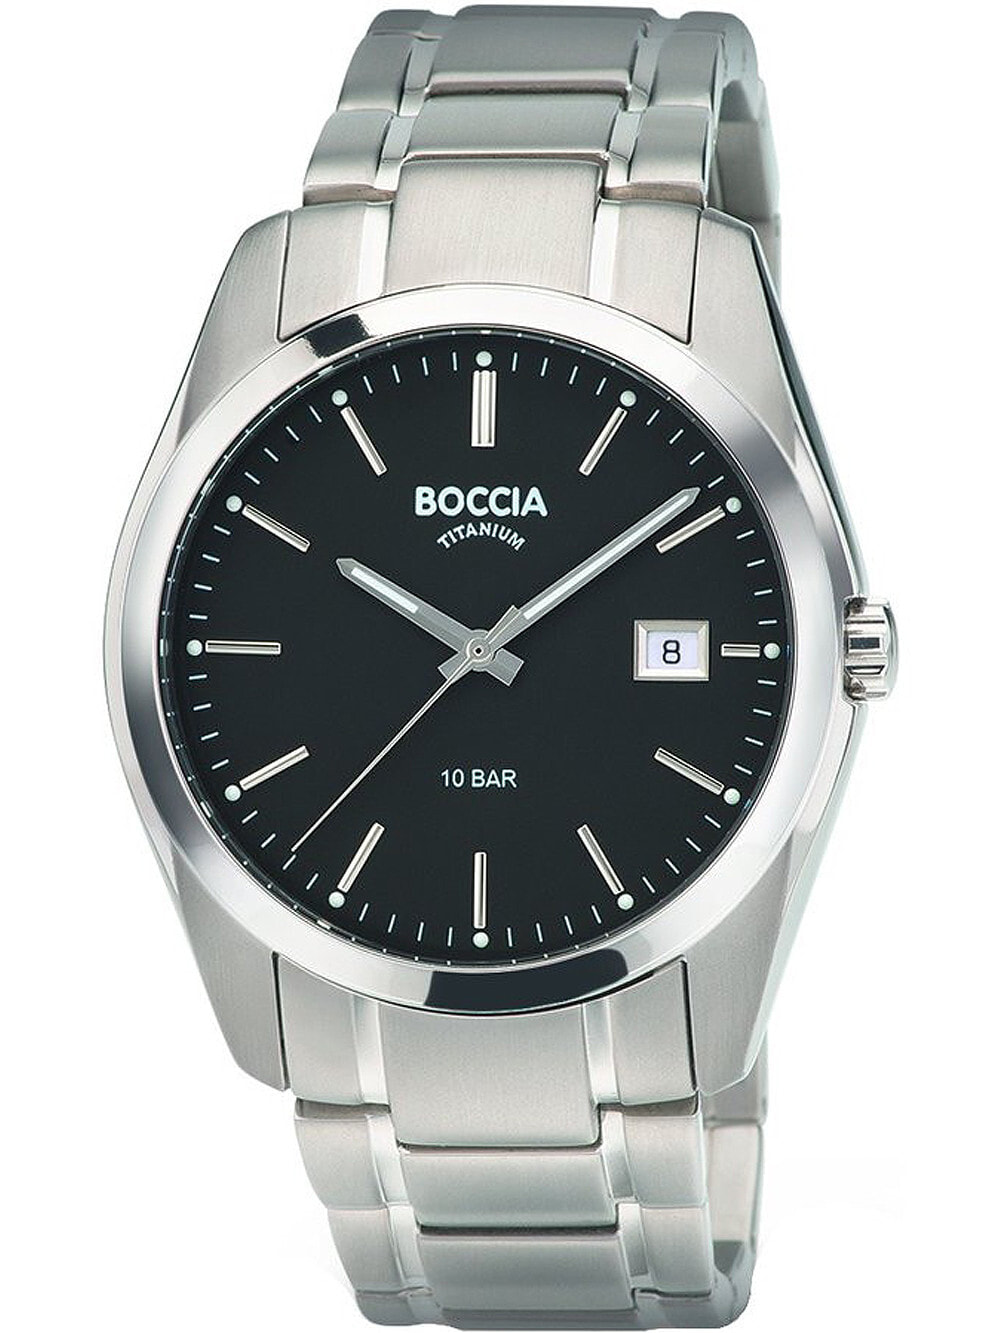 Мужские наручные часы с серебряным браслетом Boccia 3608-04 mens watch titanium 41mm 10ATM